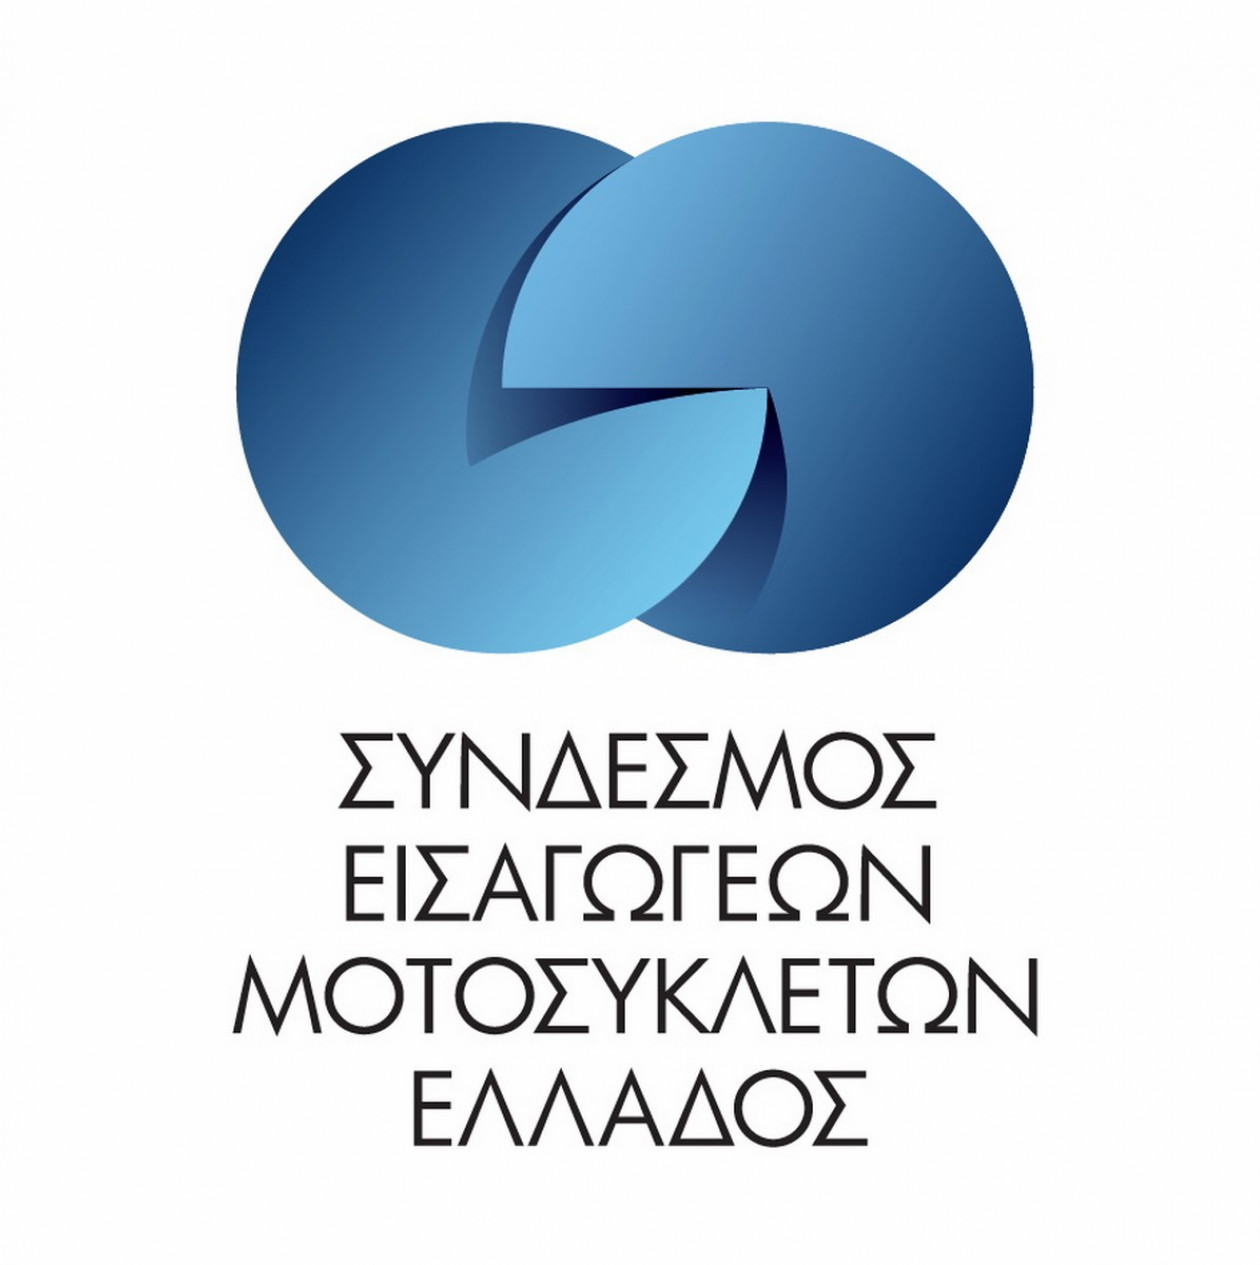 ΣΕΜΕ - Νέο λογότυπο, νέα φιλοσοφία